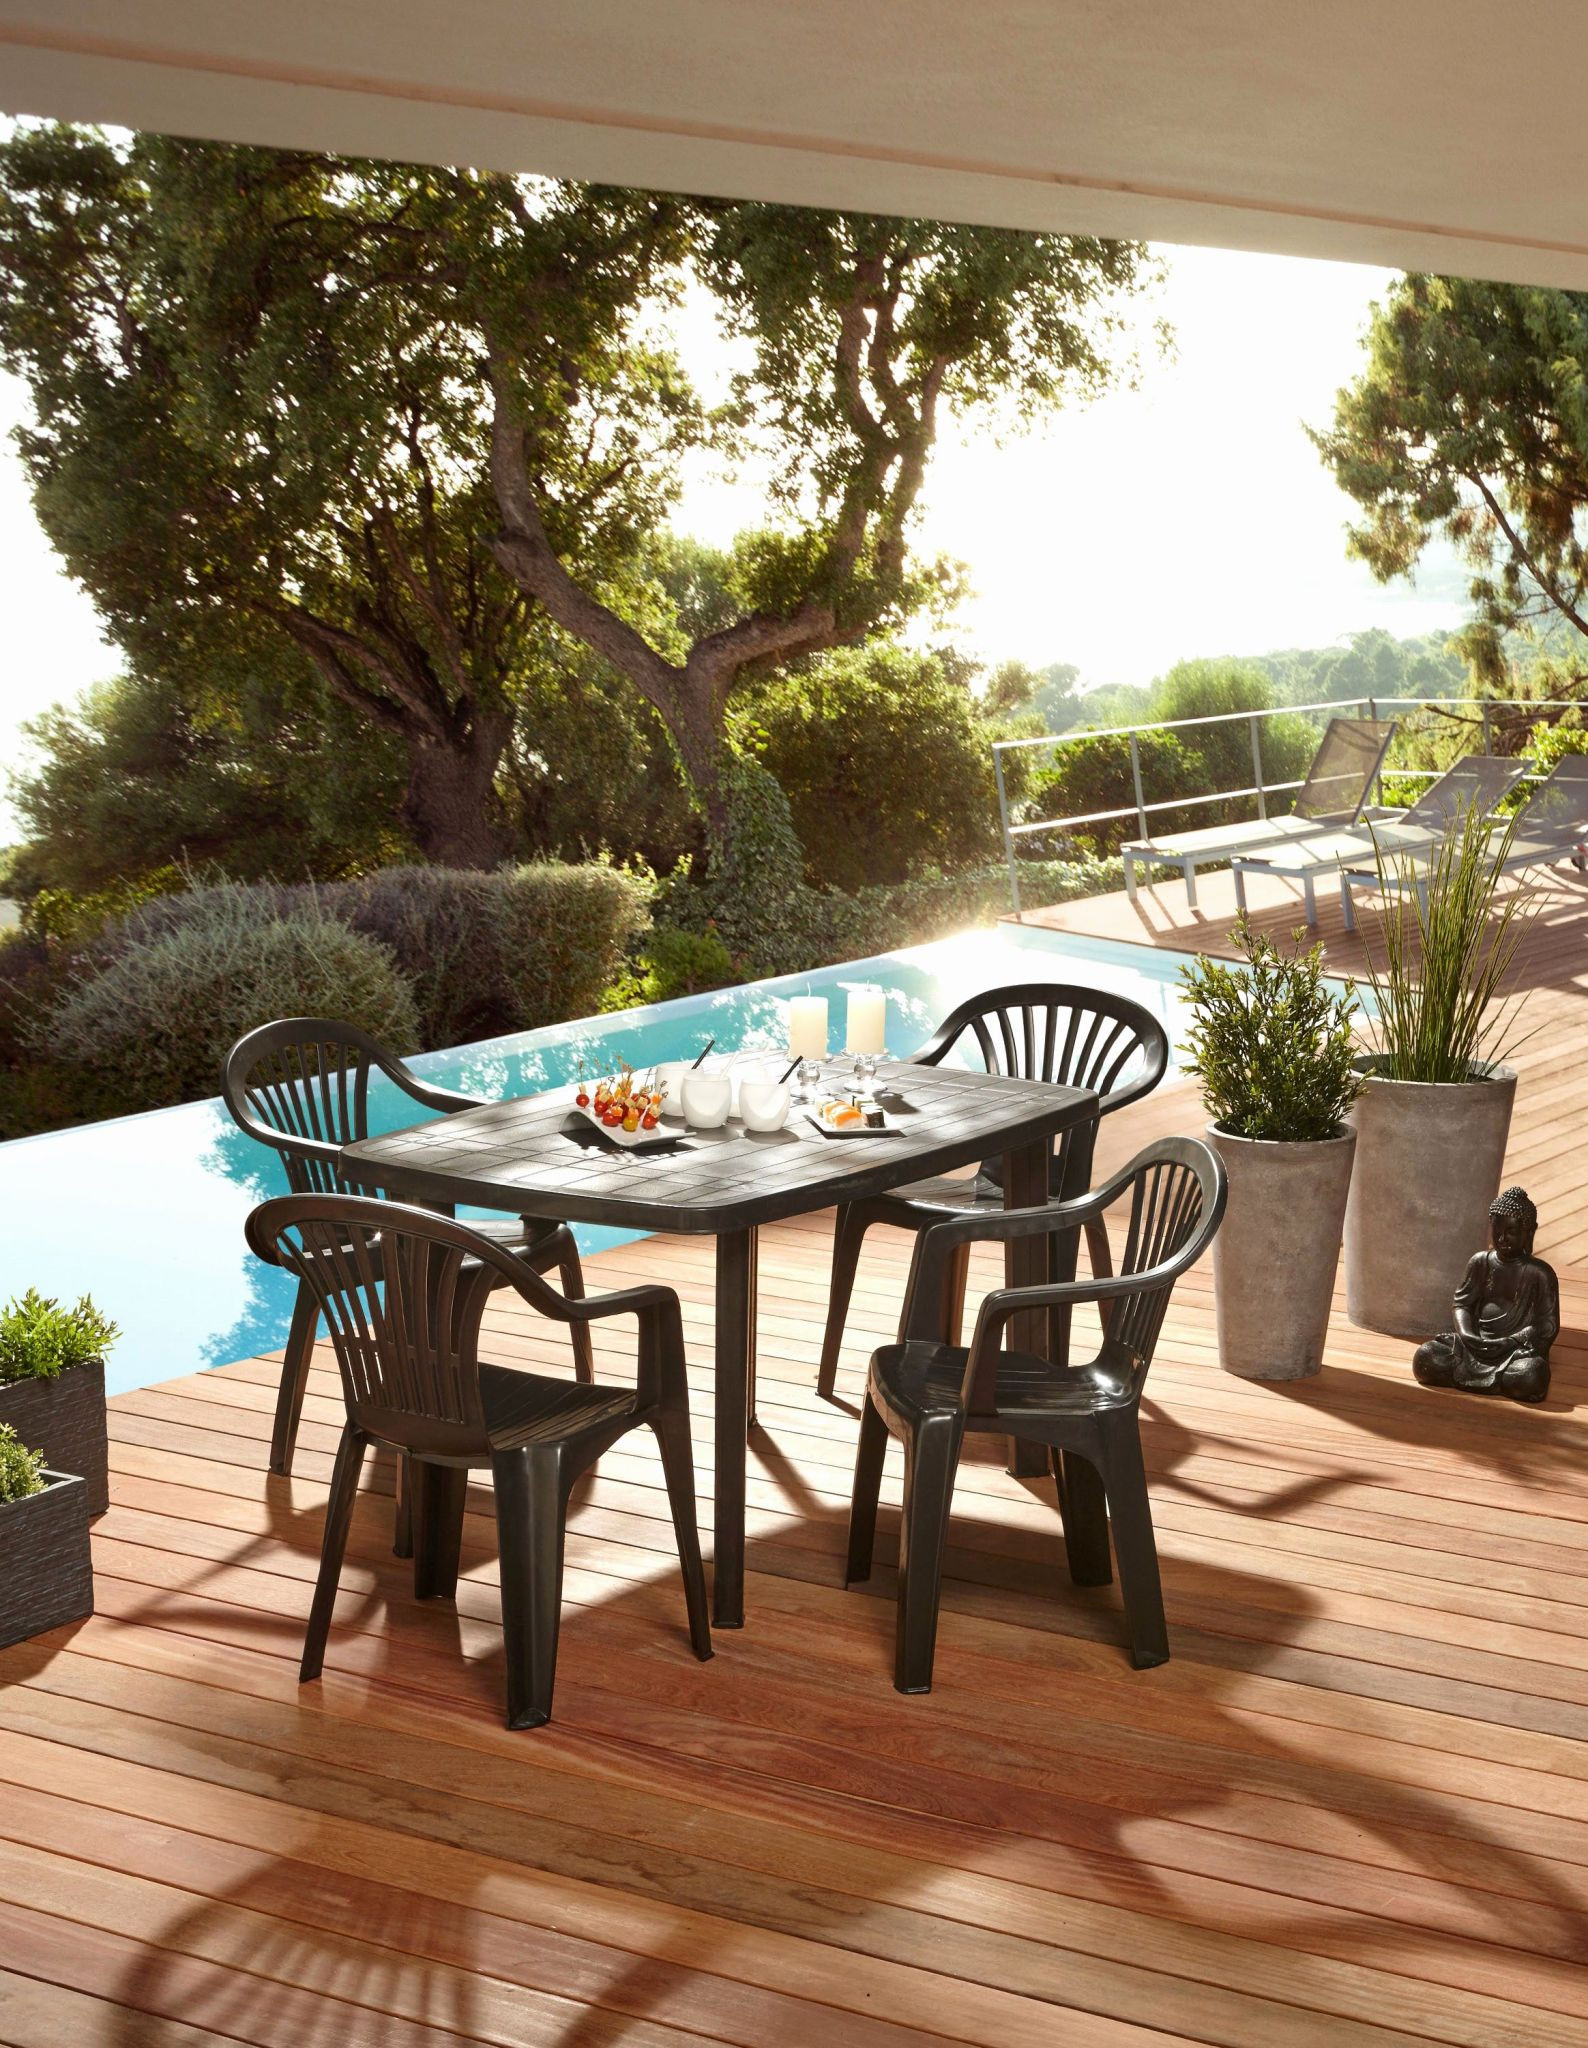 meuble exterieur bois jardin mobilier exterieur aussi table banc jardin luxe banc jardin of meuble exterieur bois